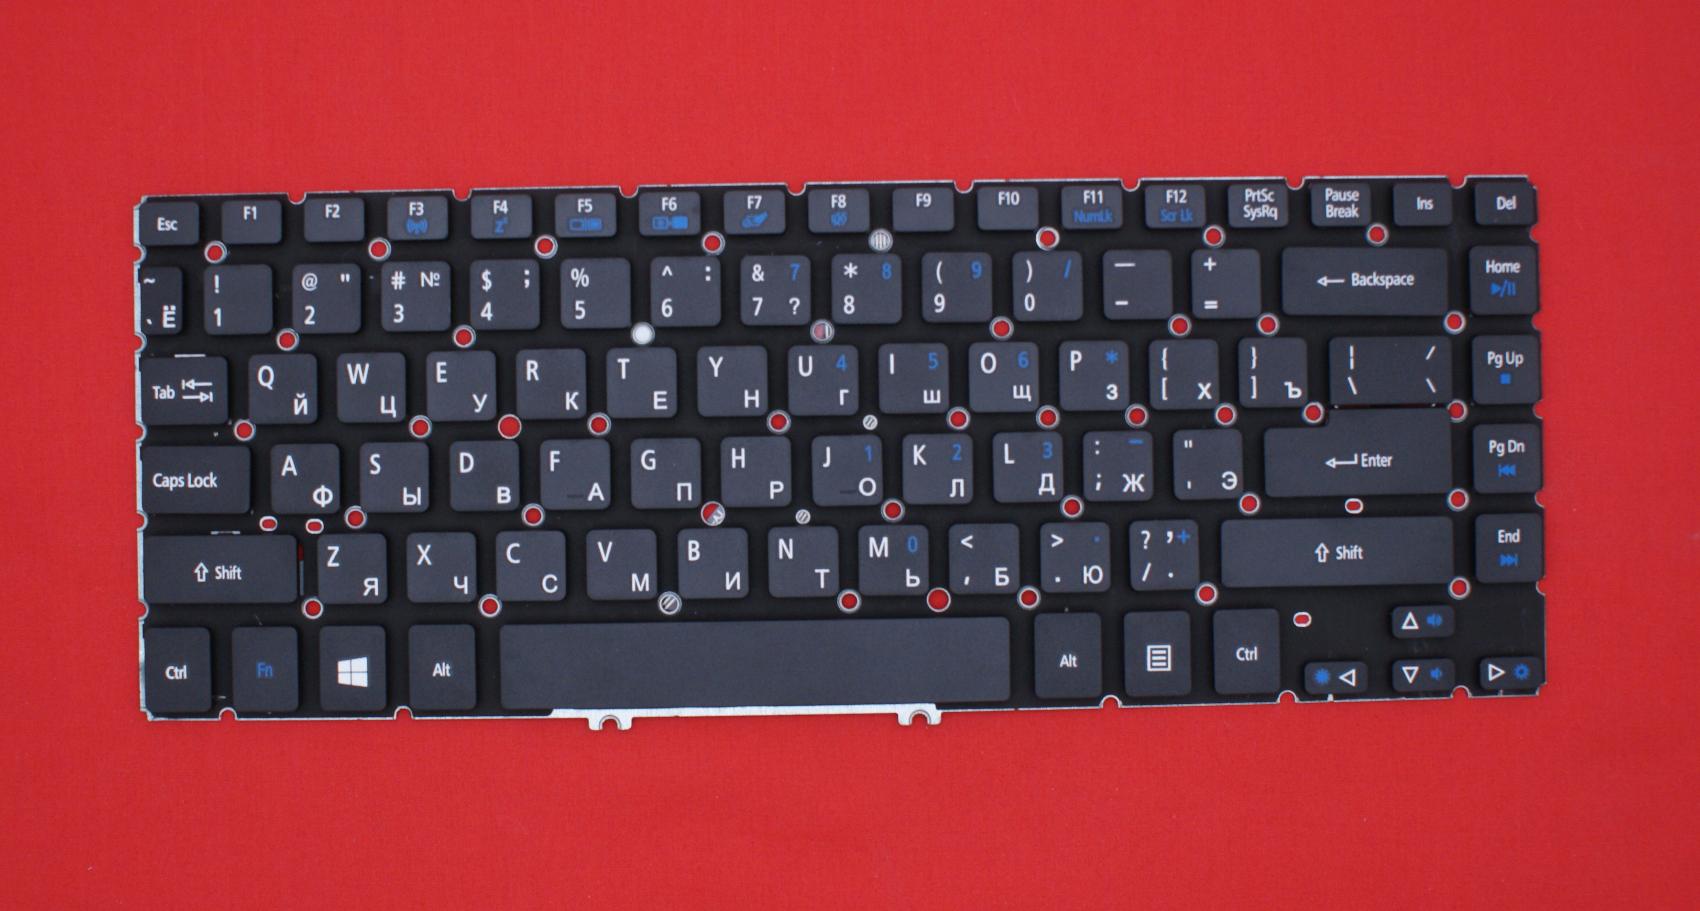 Клавиатура для ноутбука Acer Aspire V5-431